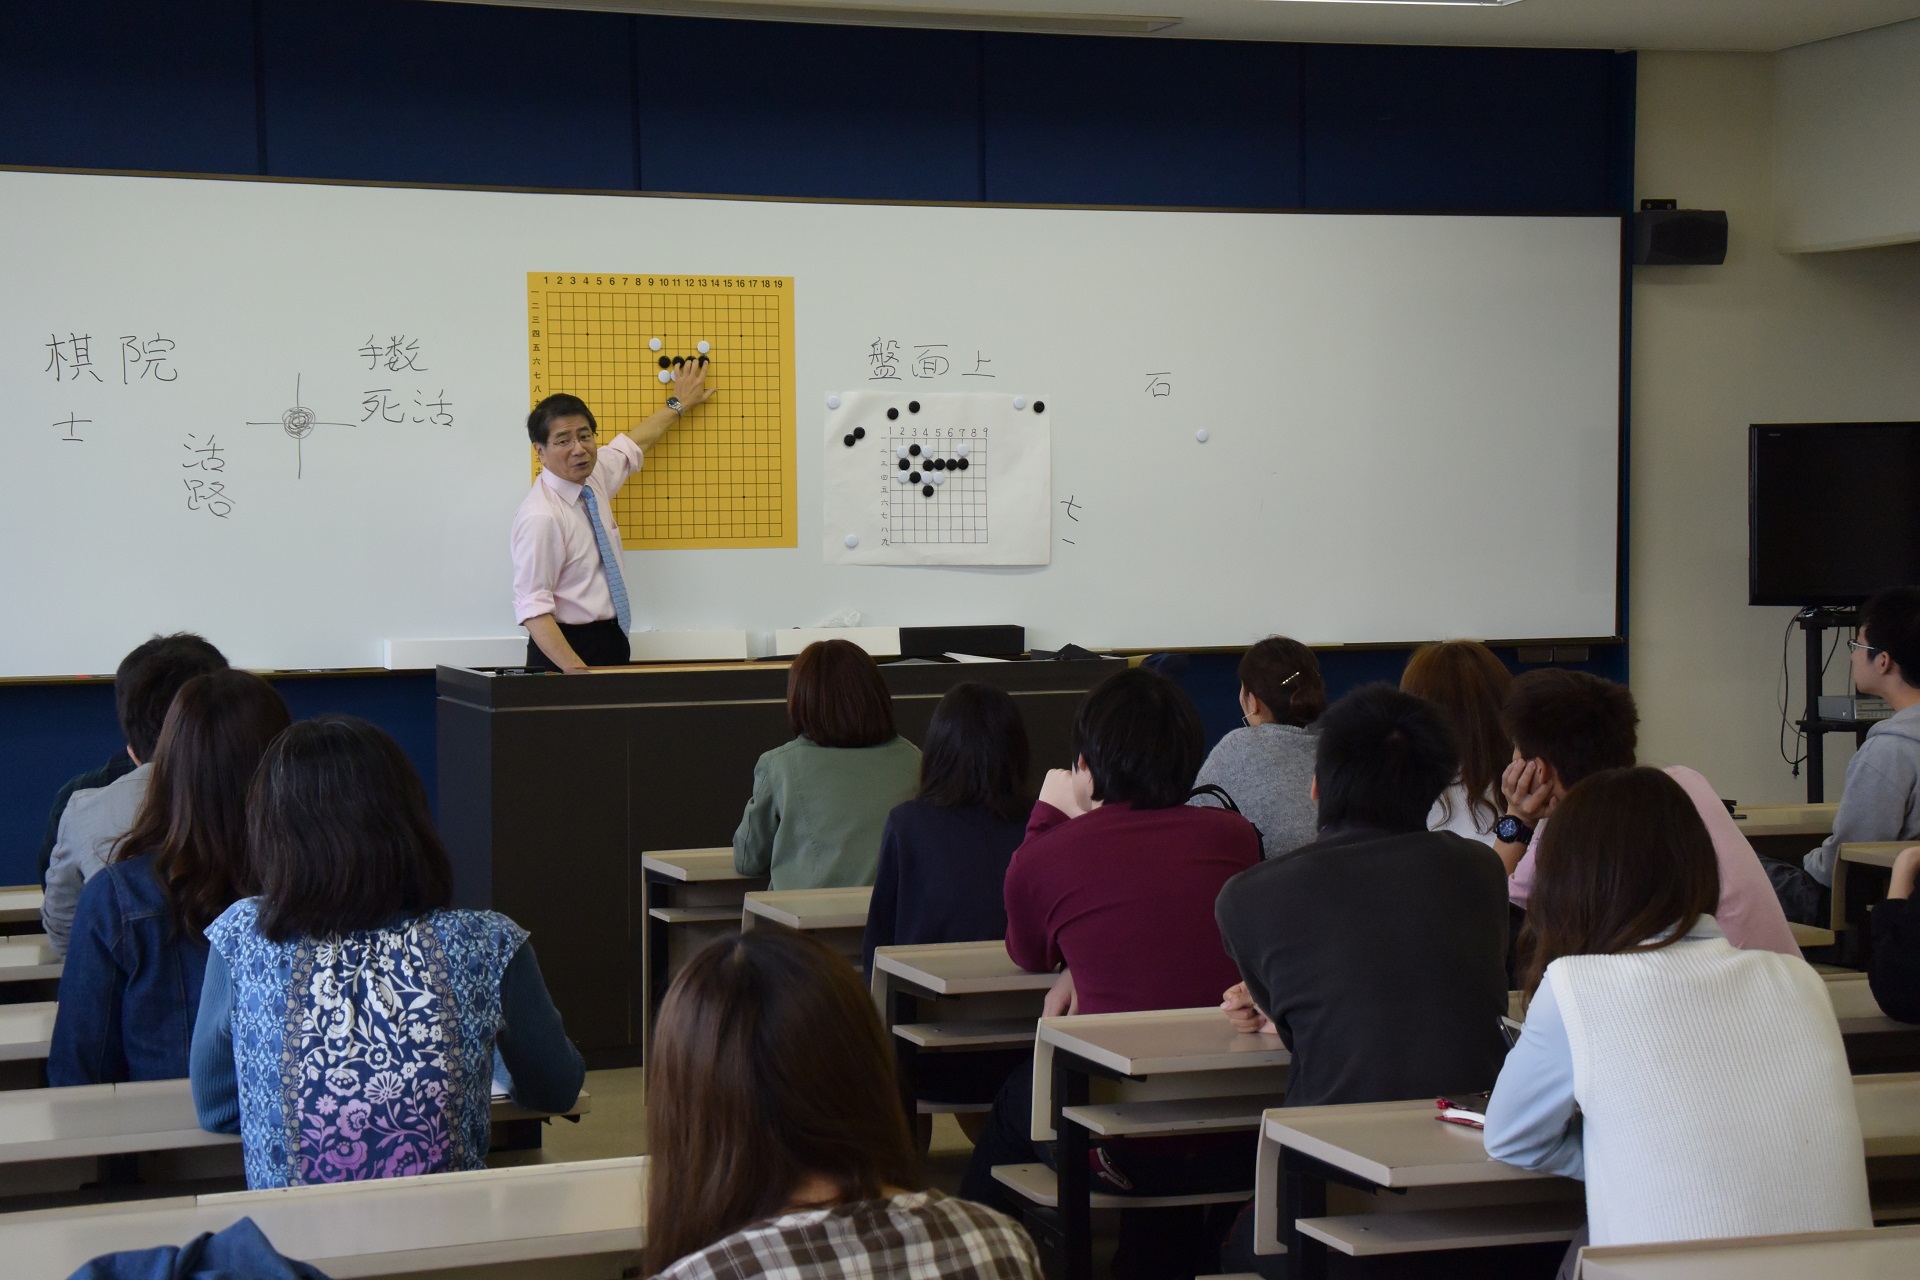 囲碁の授業を正課科目として開講 -- 大阪学院大学